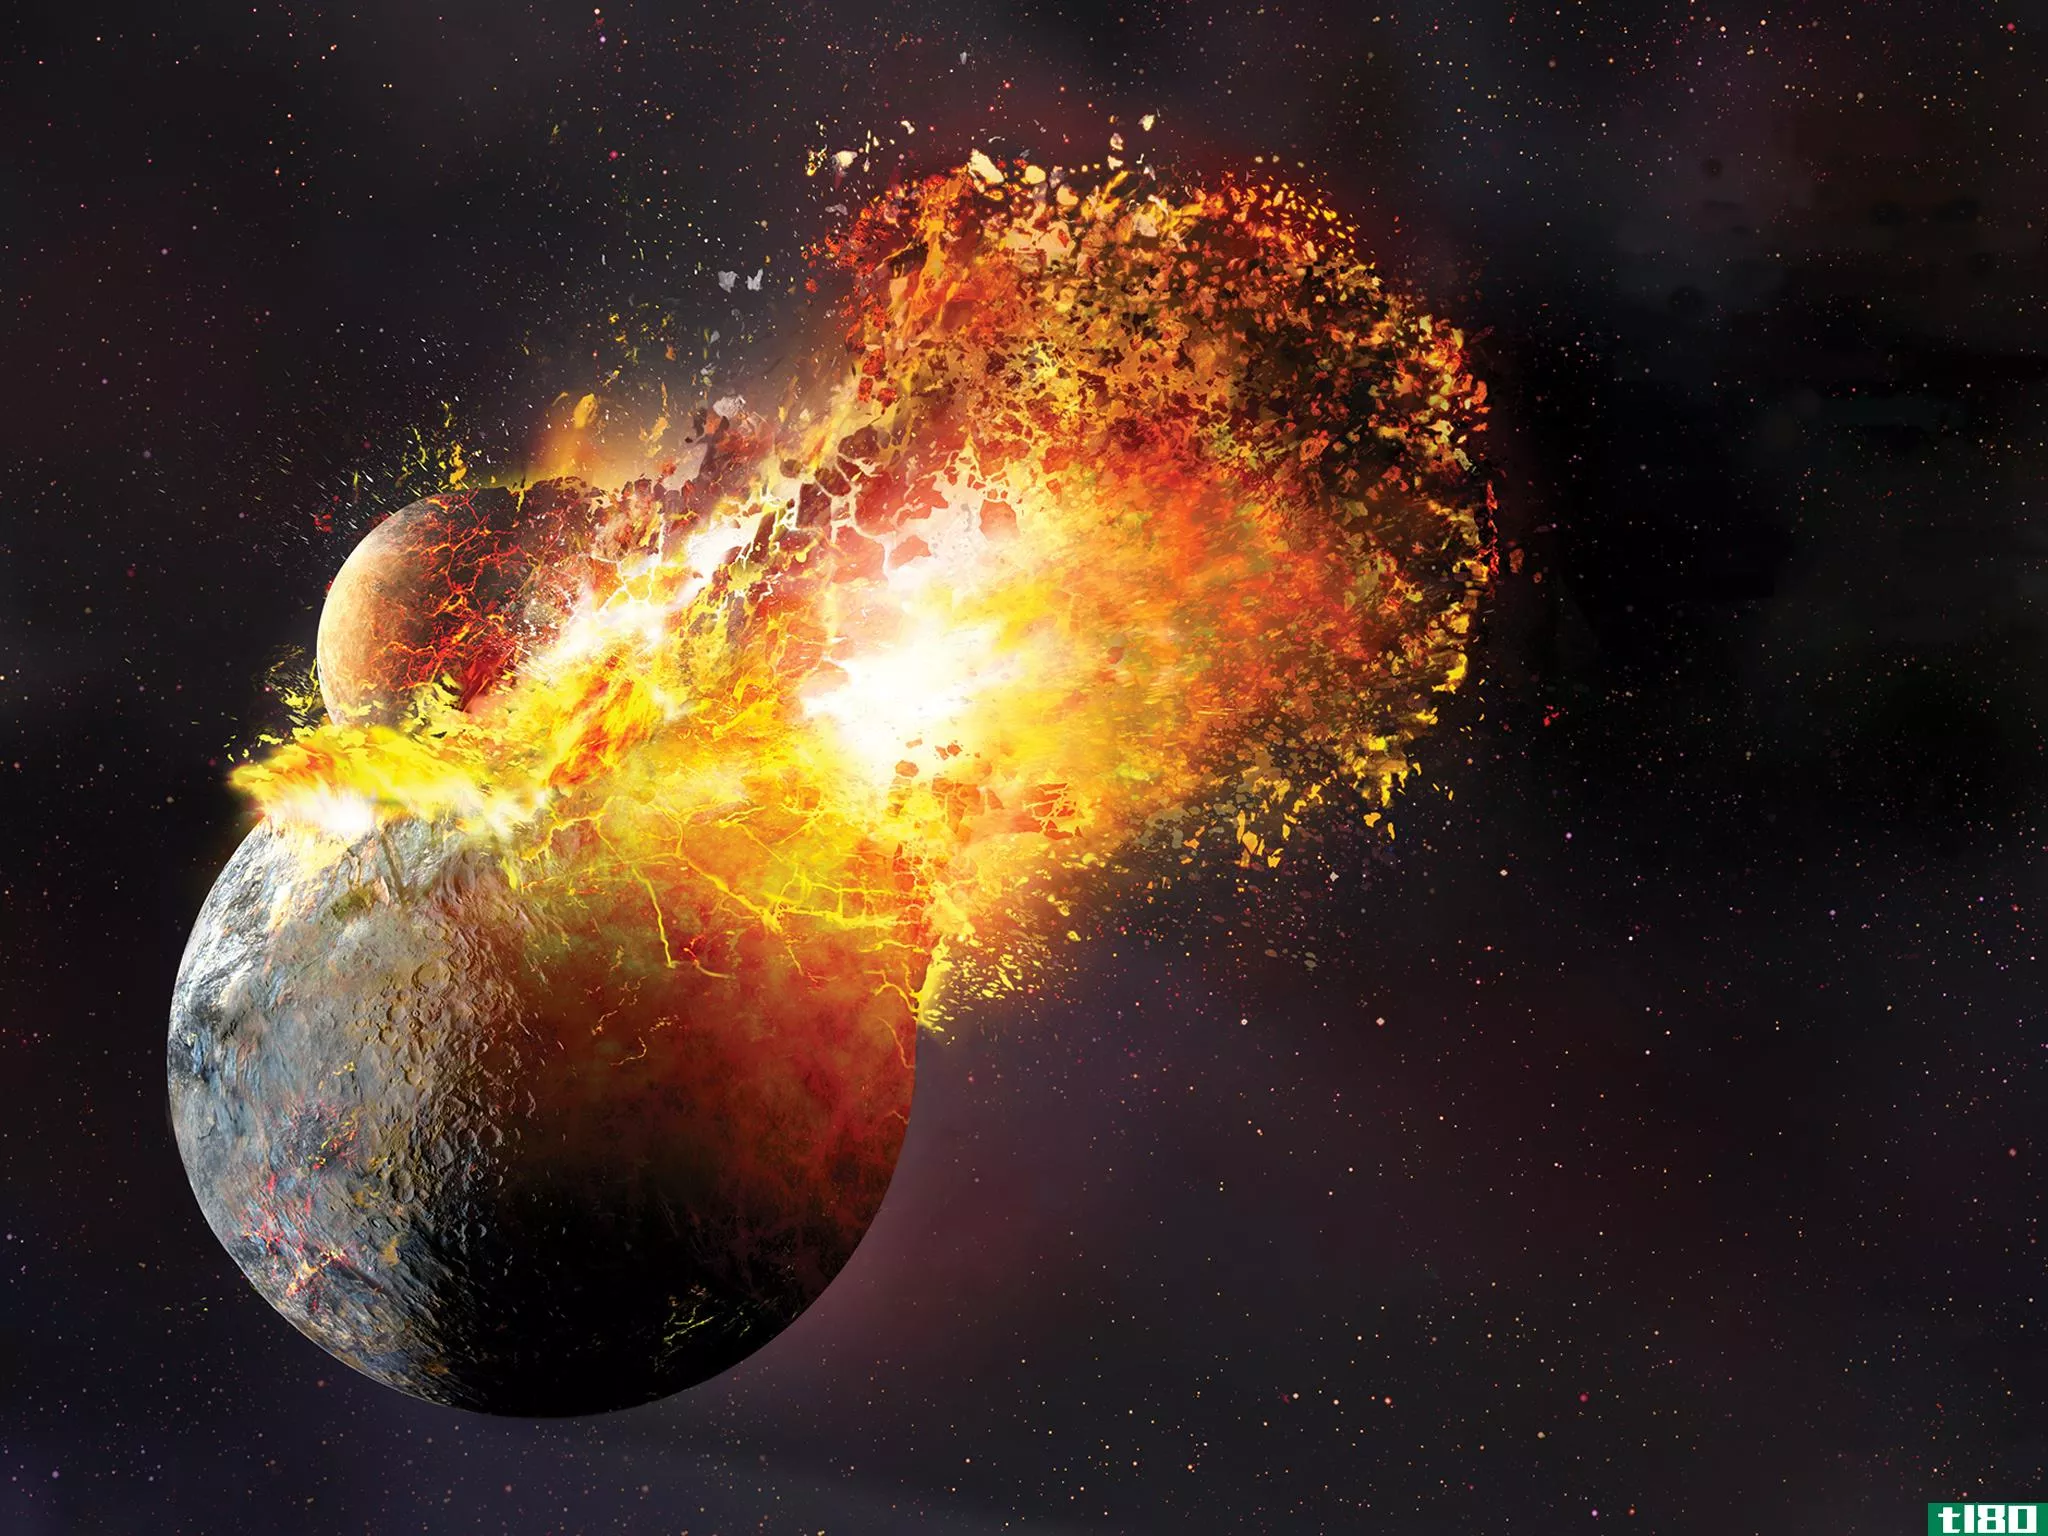 形成月球的行星碰撞可能比我们想象的要剧烈得多